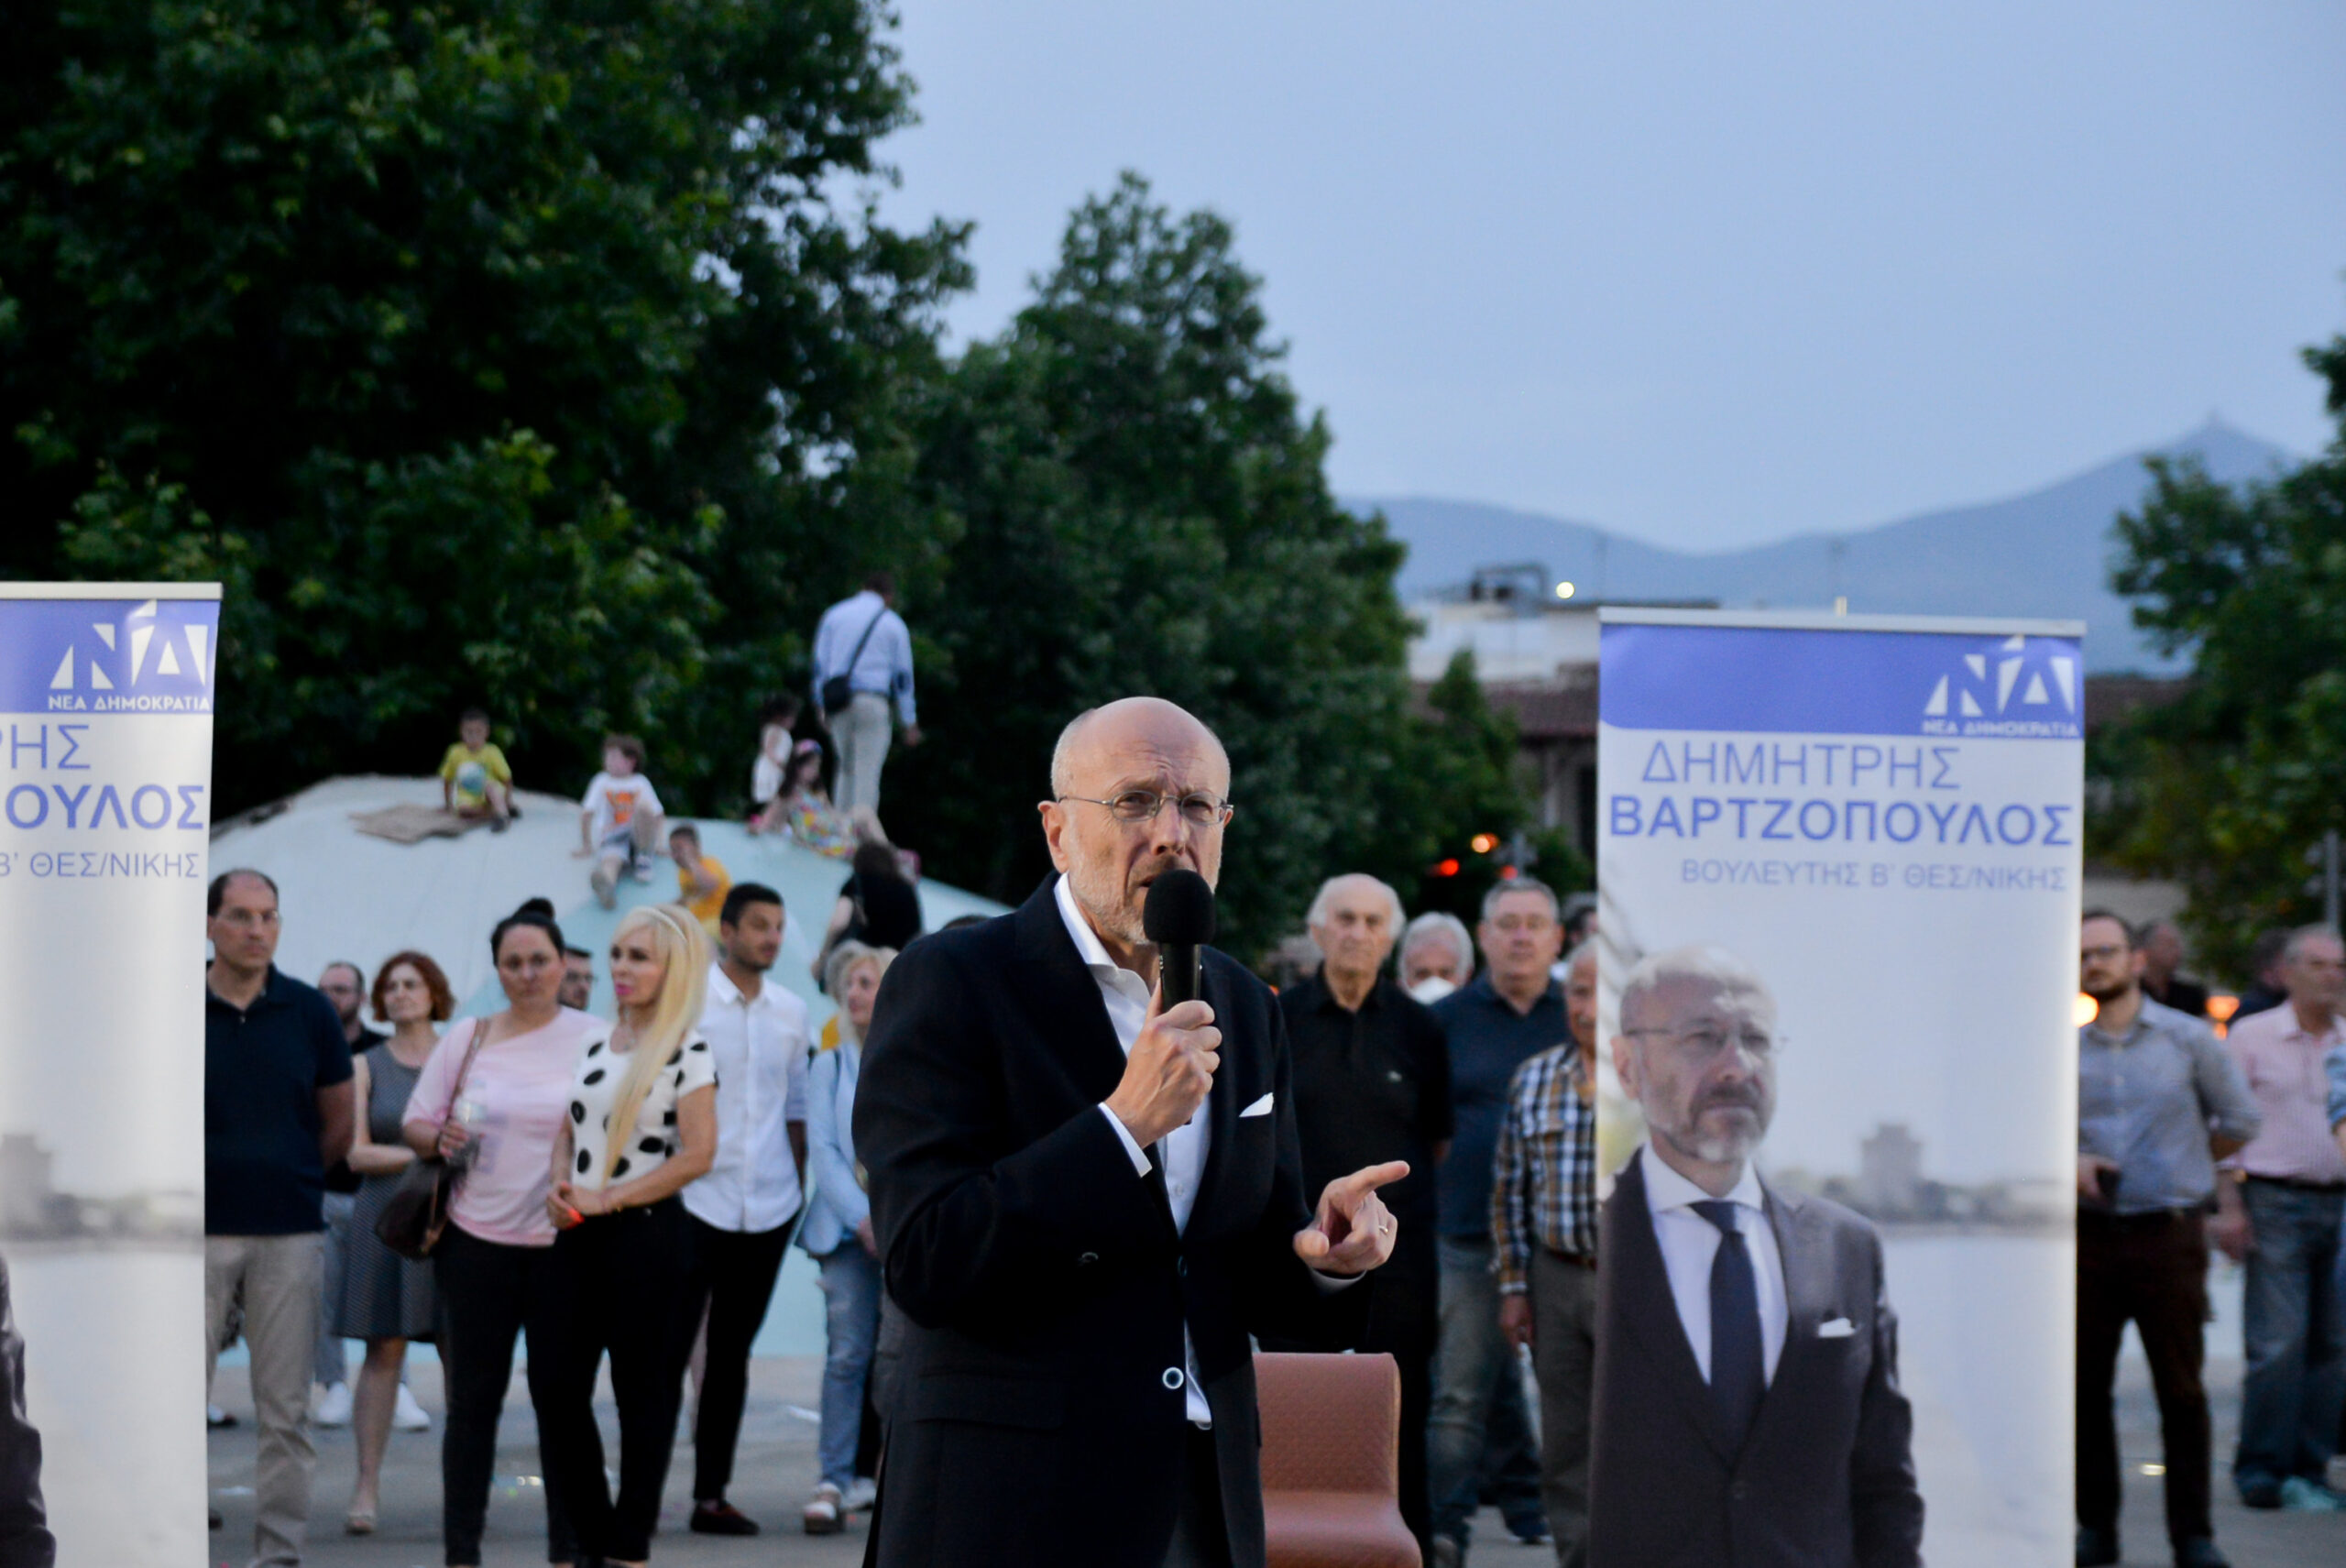 Βαρτζόπουλος στο MEGA: “Οι θεσμοί στην Ελλάδα είναι ατράνταχτοι και δεν κινδυνεύει η πατρίς” (ΒΙΝΤΕΟ)